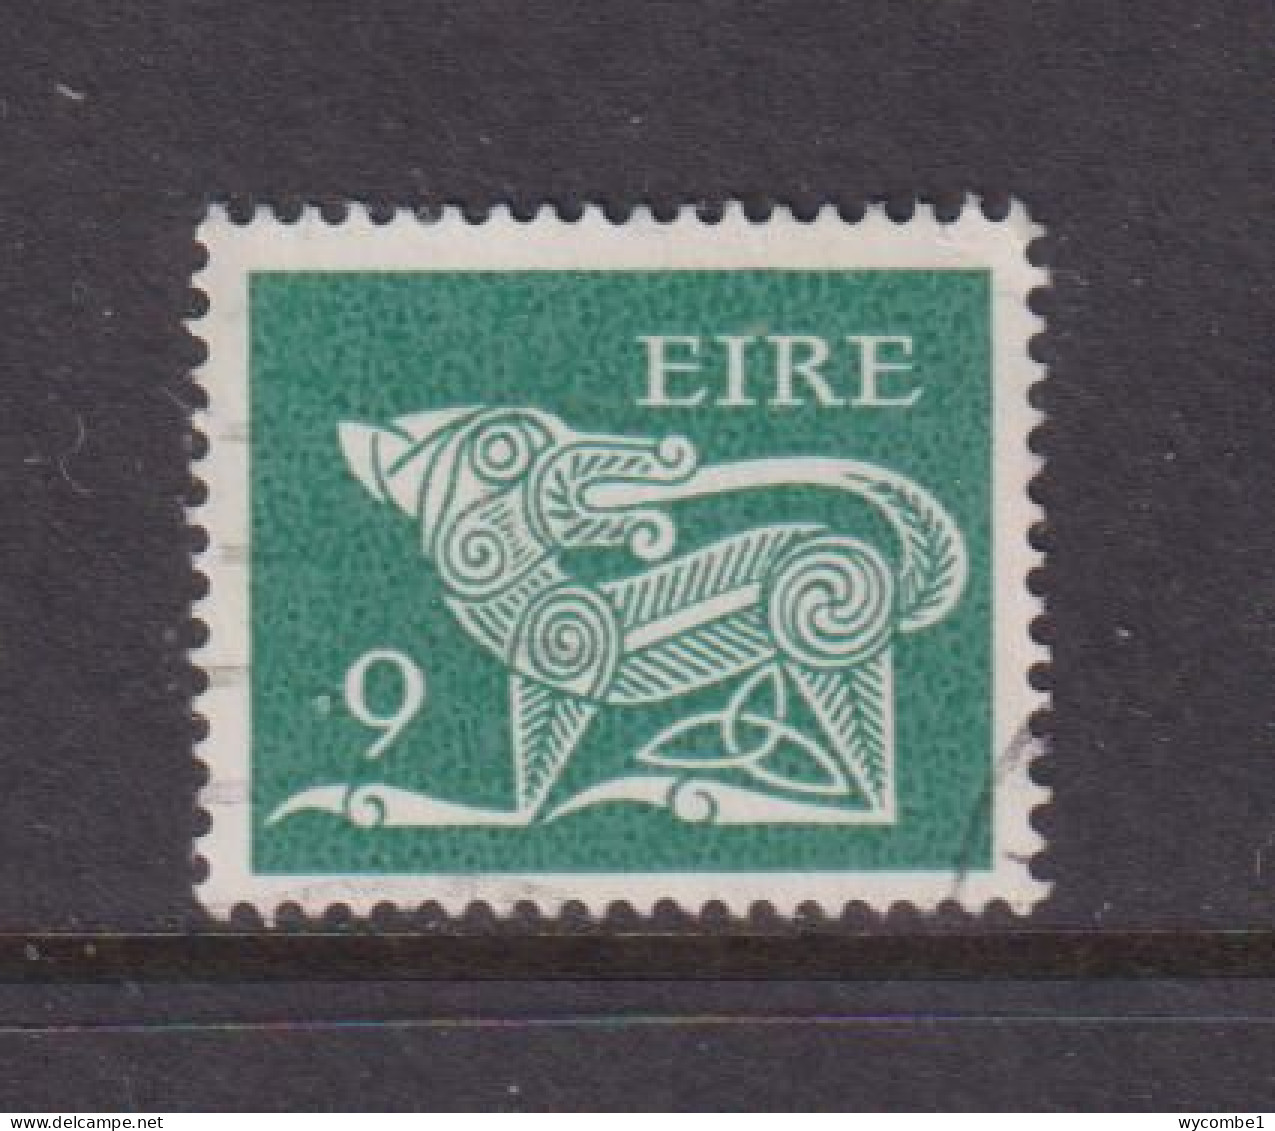 IRELAND - 1971  Decimal Currency Definitives  9p  Used As Scan - Gebruikt